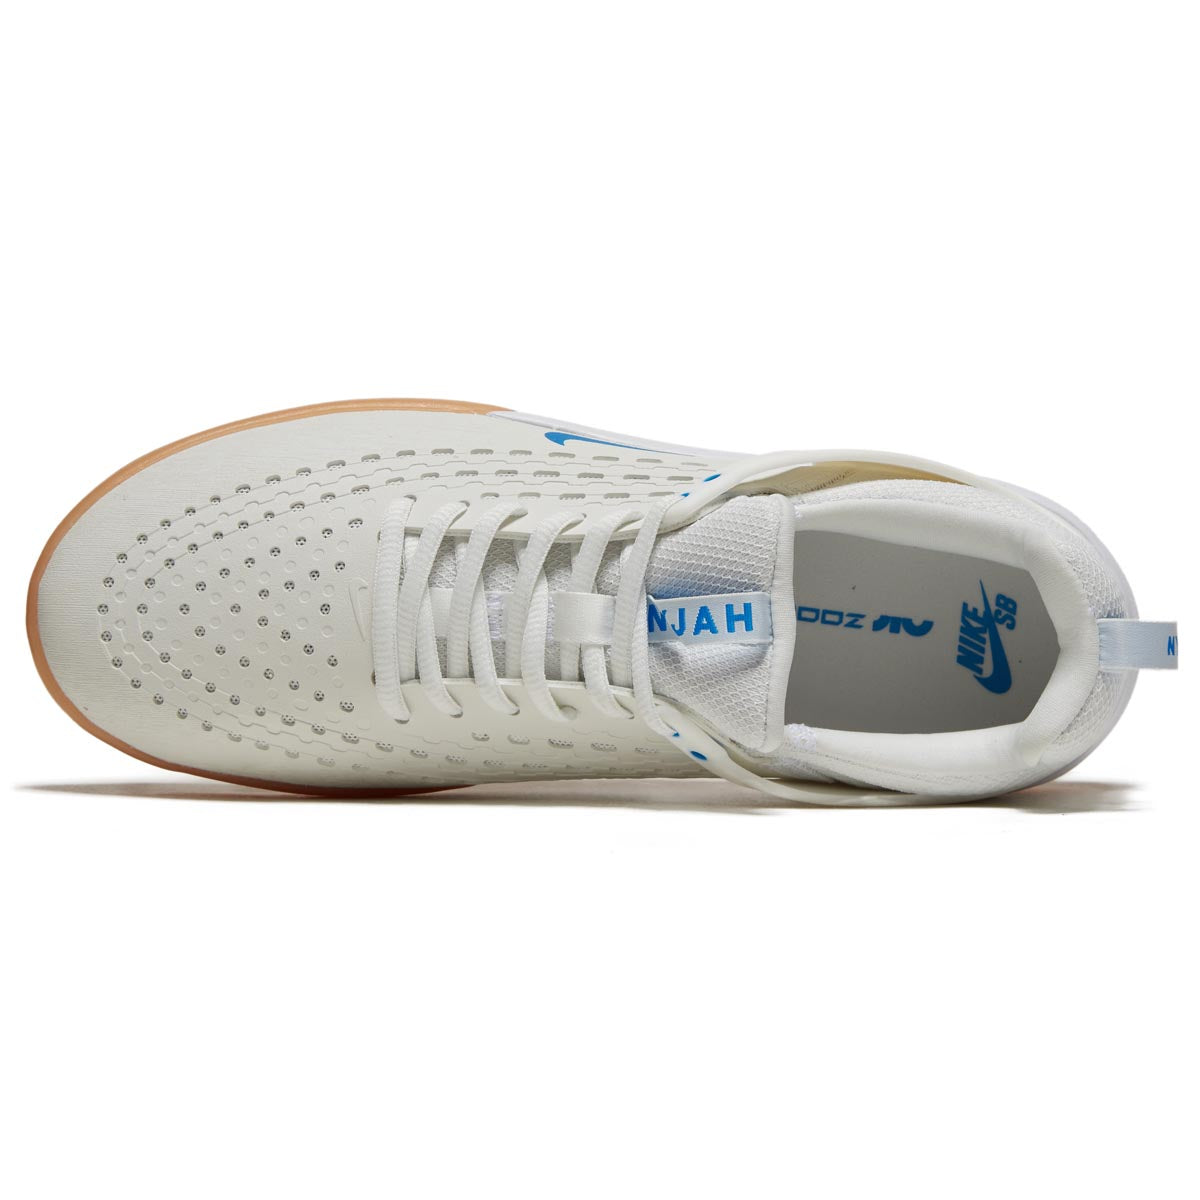 Nike SB Zoom Nyjah 3 Shoes - Summit White/Photo Blue/Summit White image 3